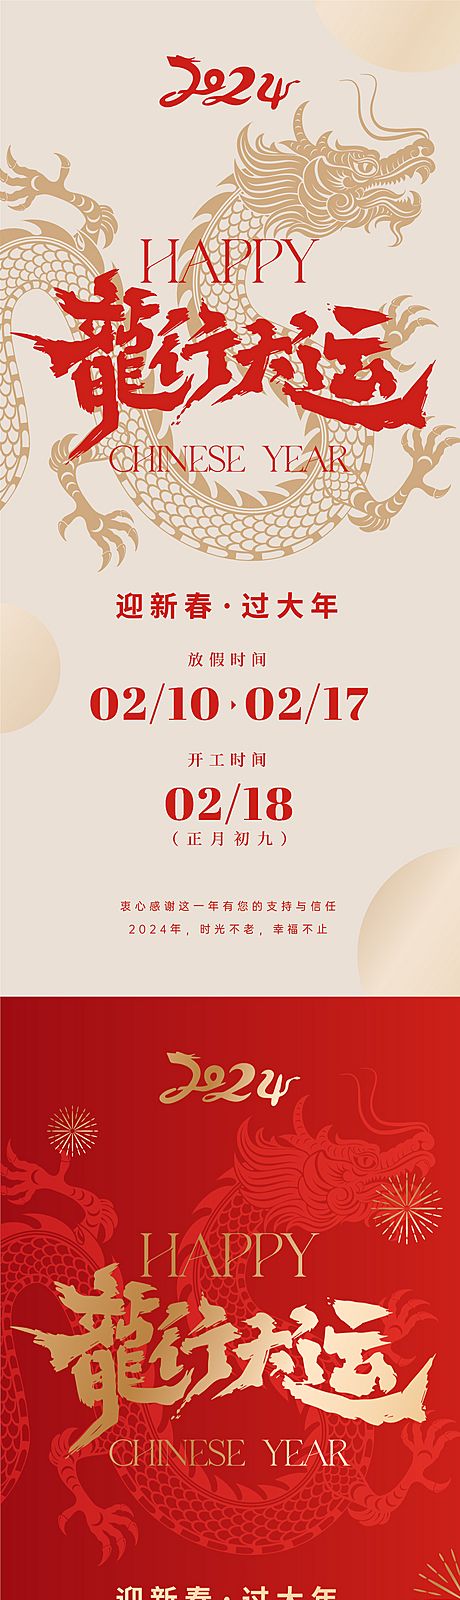 仙图网-龙年春节放假通知海报